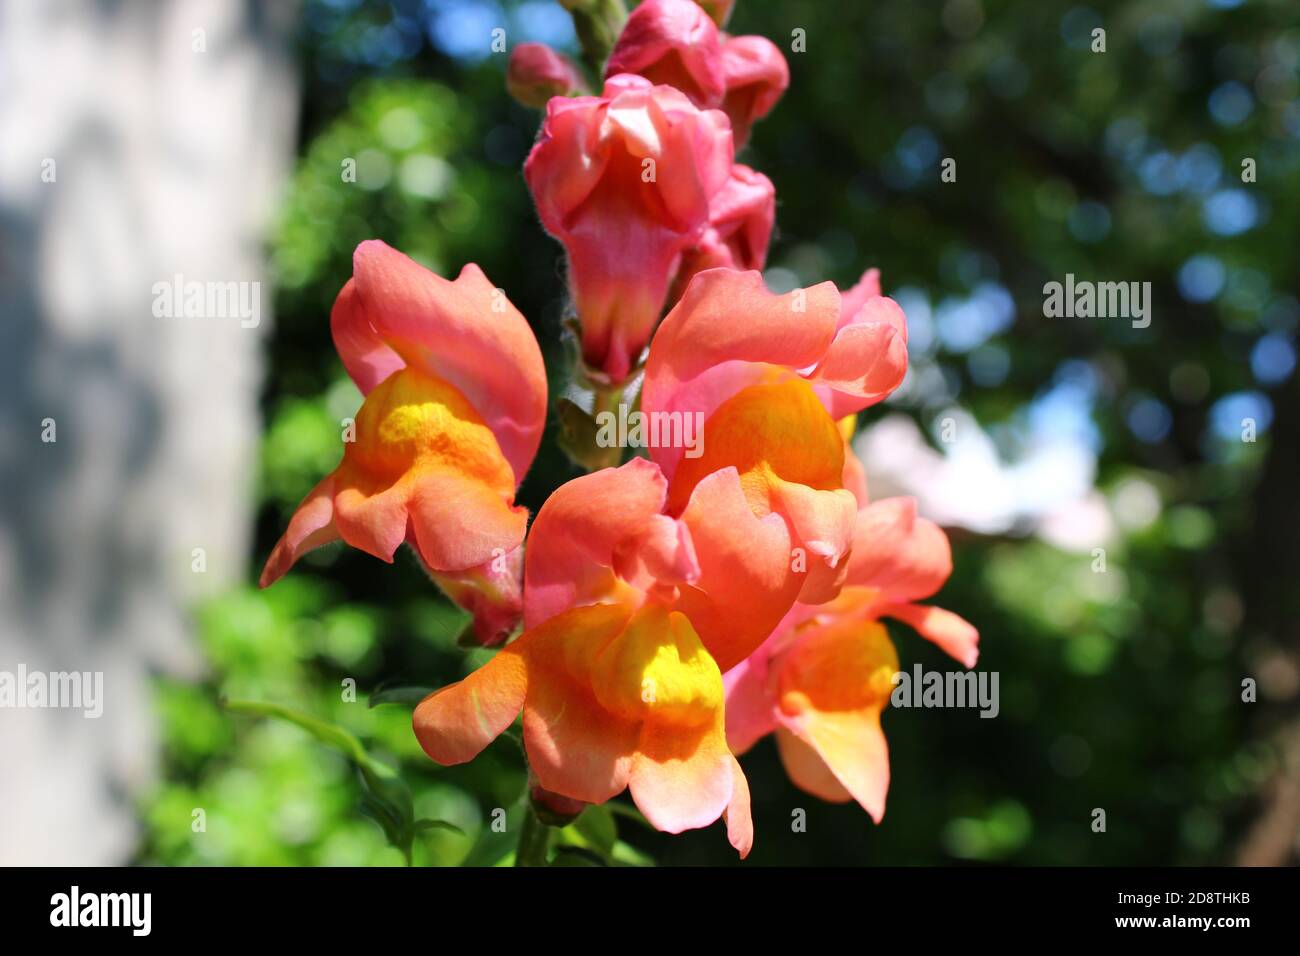 Alamy Pink-arancio snappagagon / fiore bocca leone in giardino, primo piano con sfondo sfocato. Foto Stock